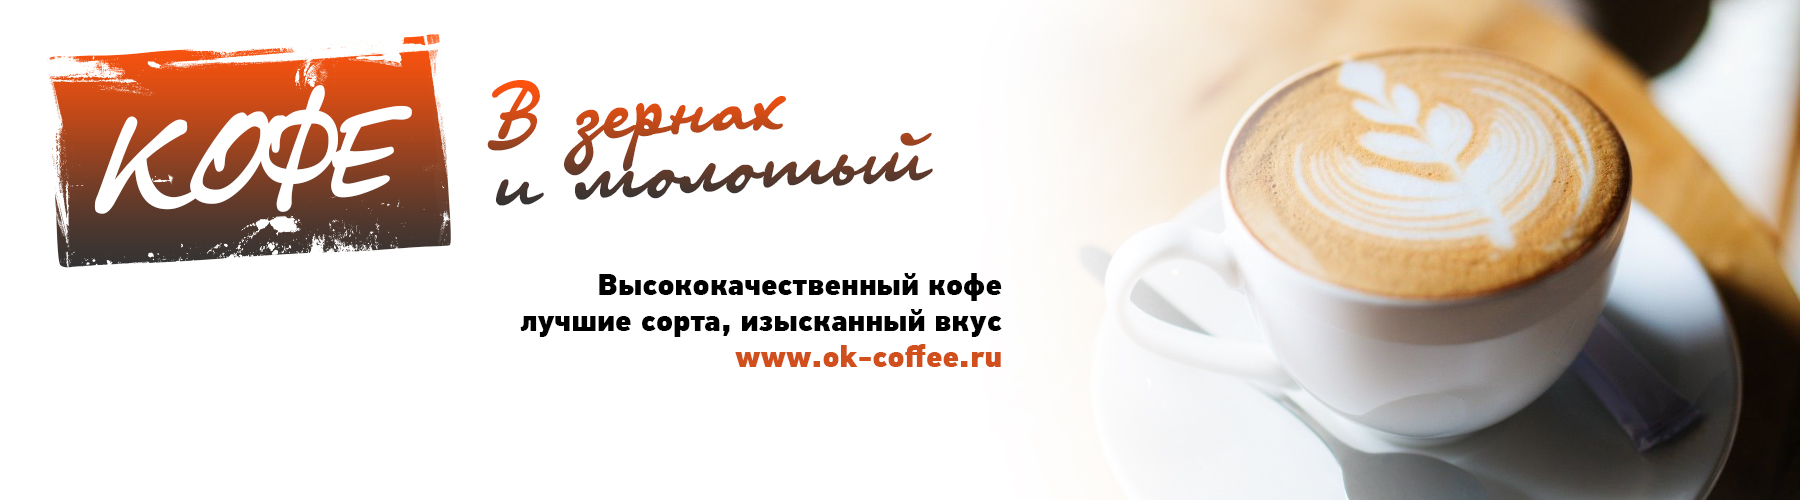 Молотый кофе, кофе в зернах, кофе оптом, купить кофе оптом, чай кофе опт